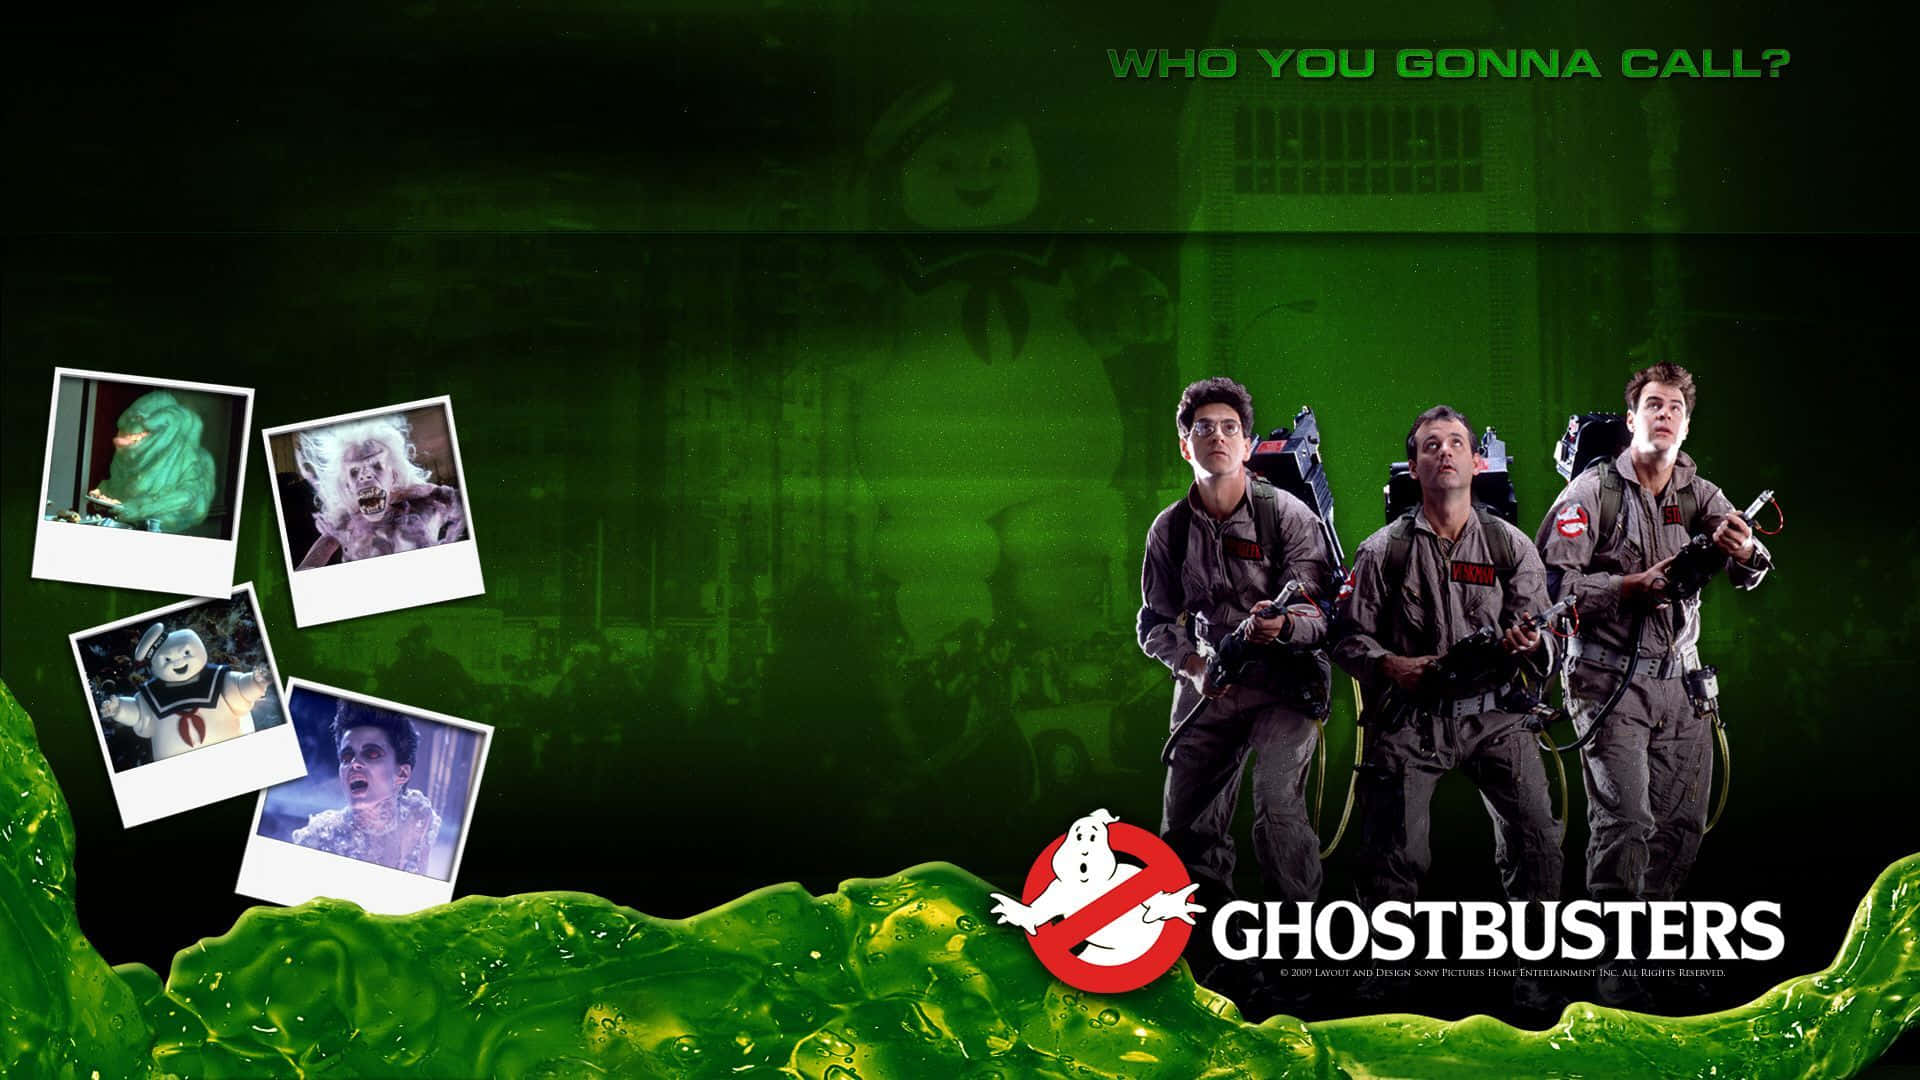 Juntese À Equipe Dos Caça-fantasmas Enquanto Eles Combatem Os Fantasmas Irritantes!